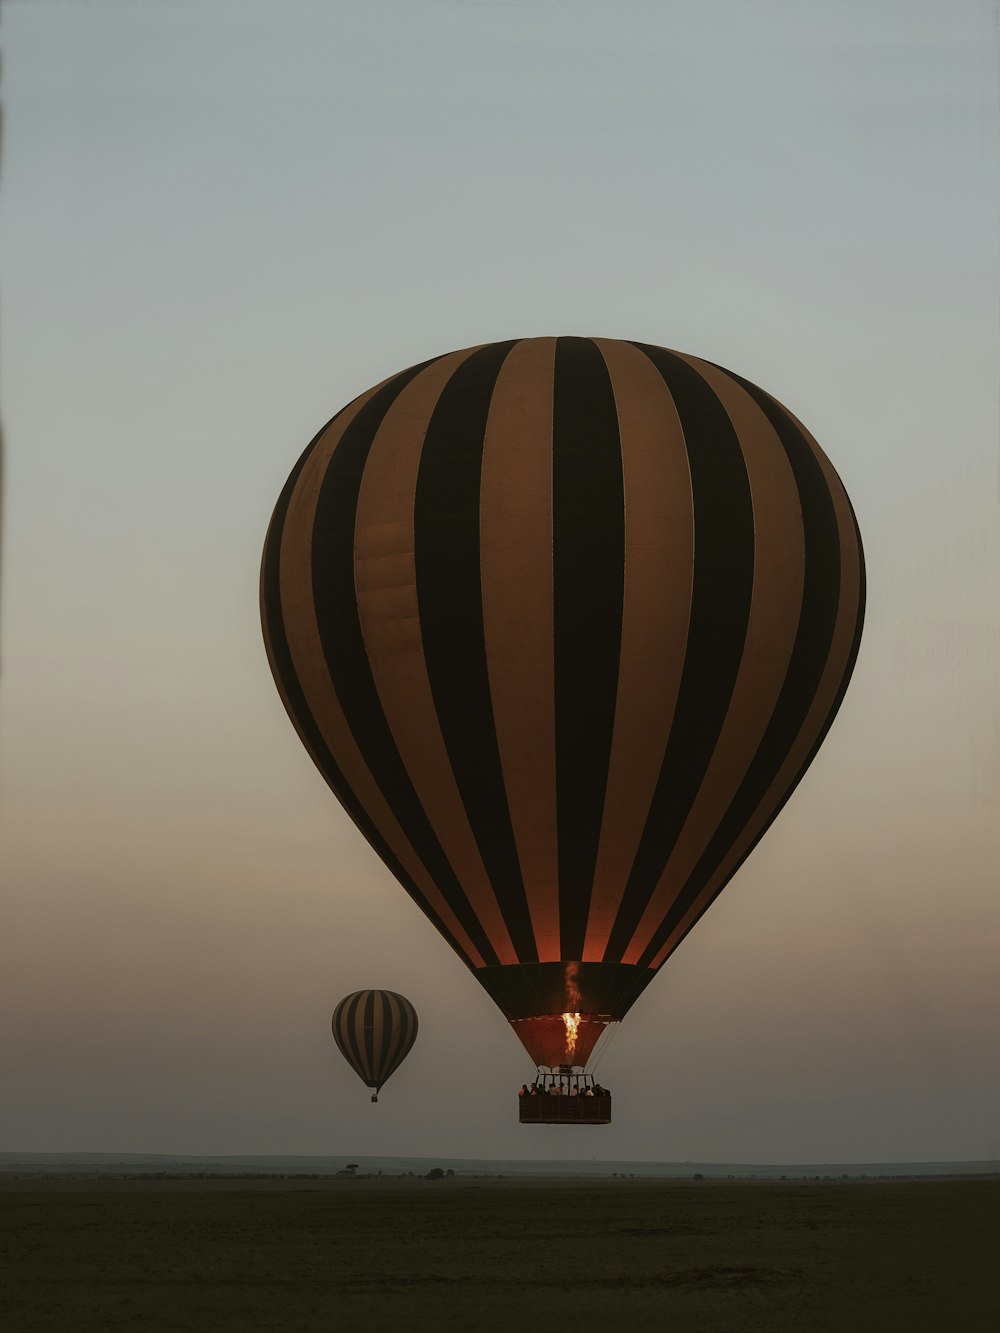 um par de balões de ar quente voando no céu